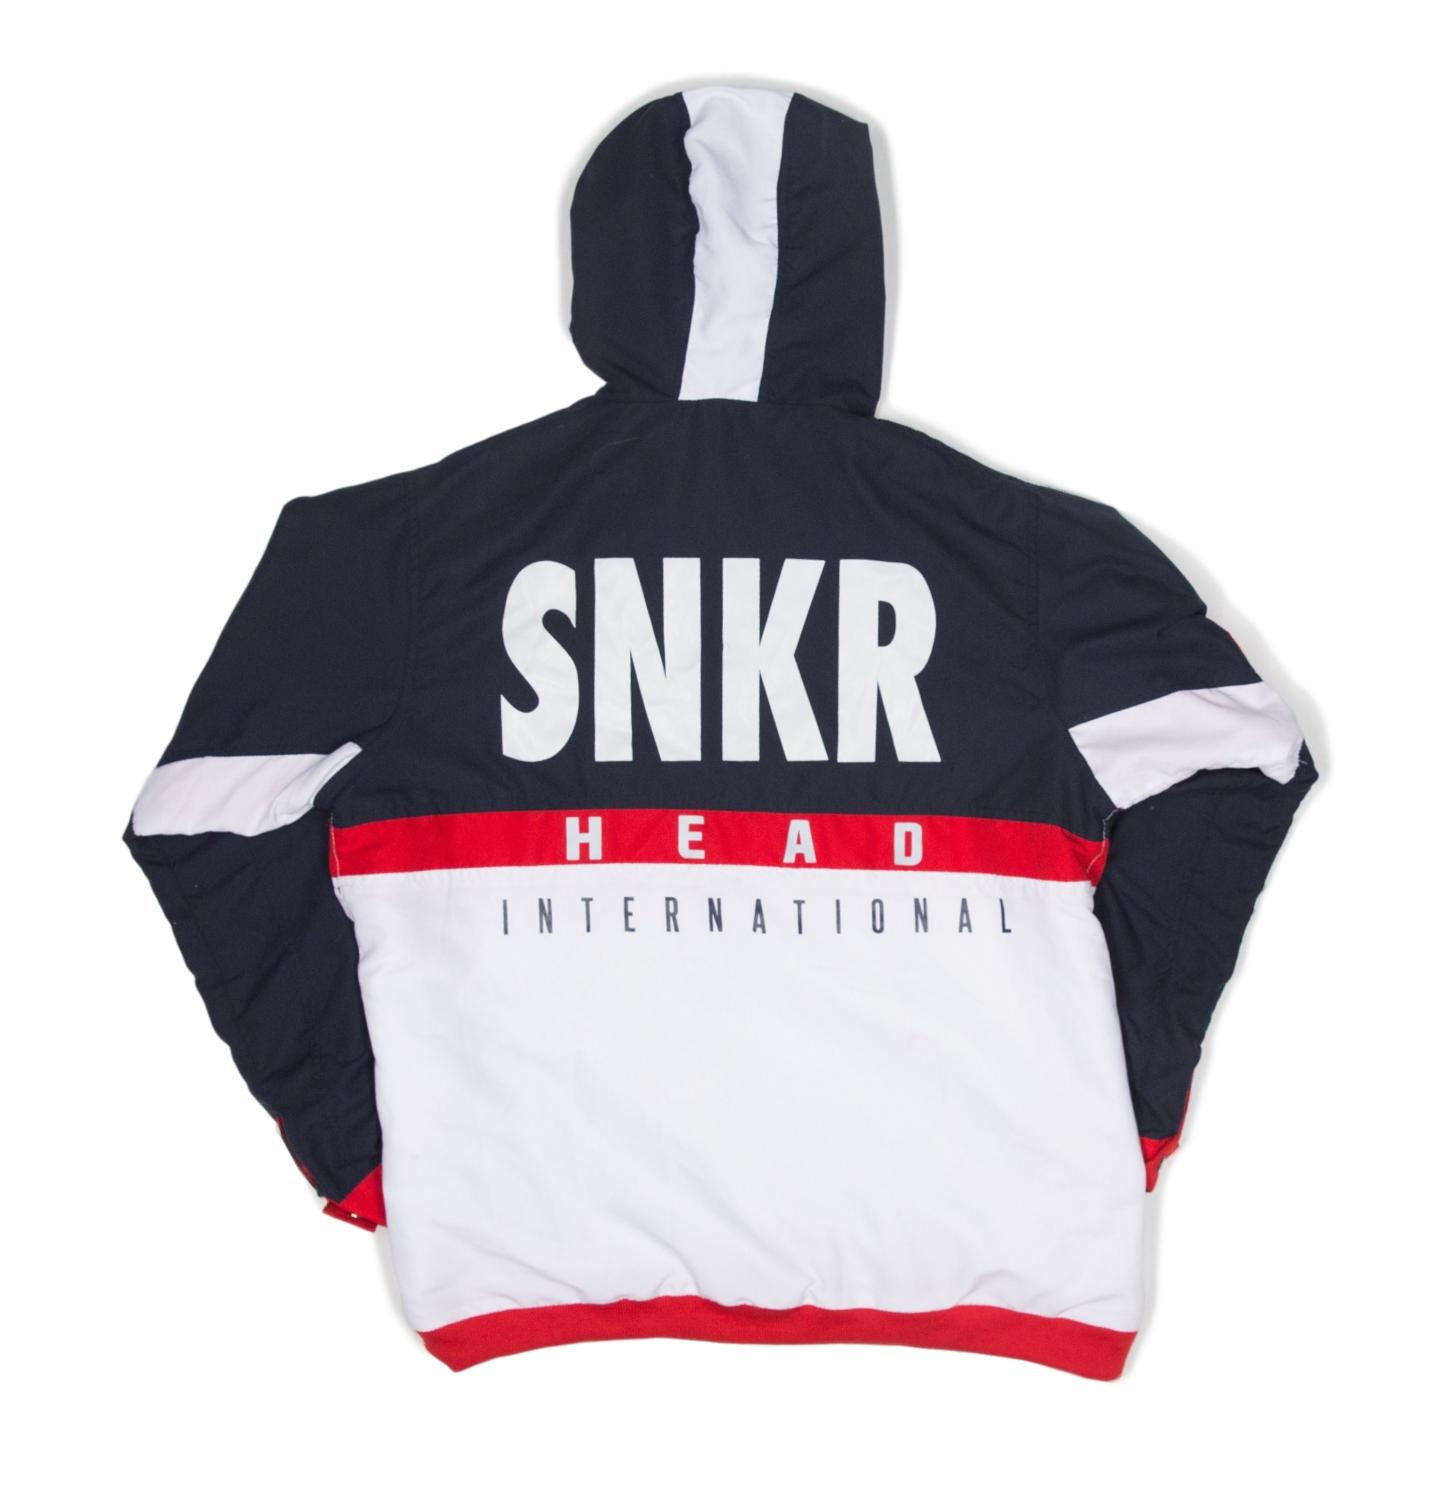 SNKR HEAD Tech-Sport International Windbreaker Jacket (Red, White, Blue)